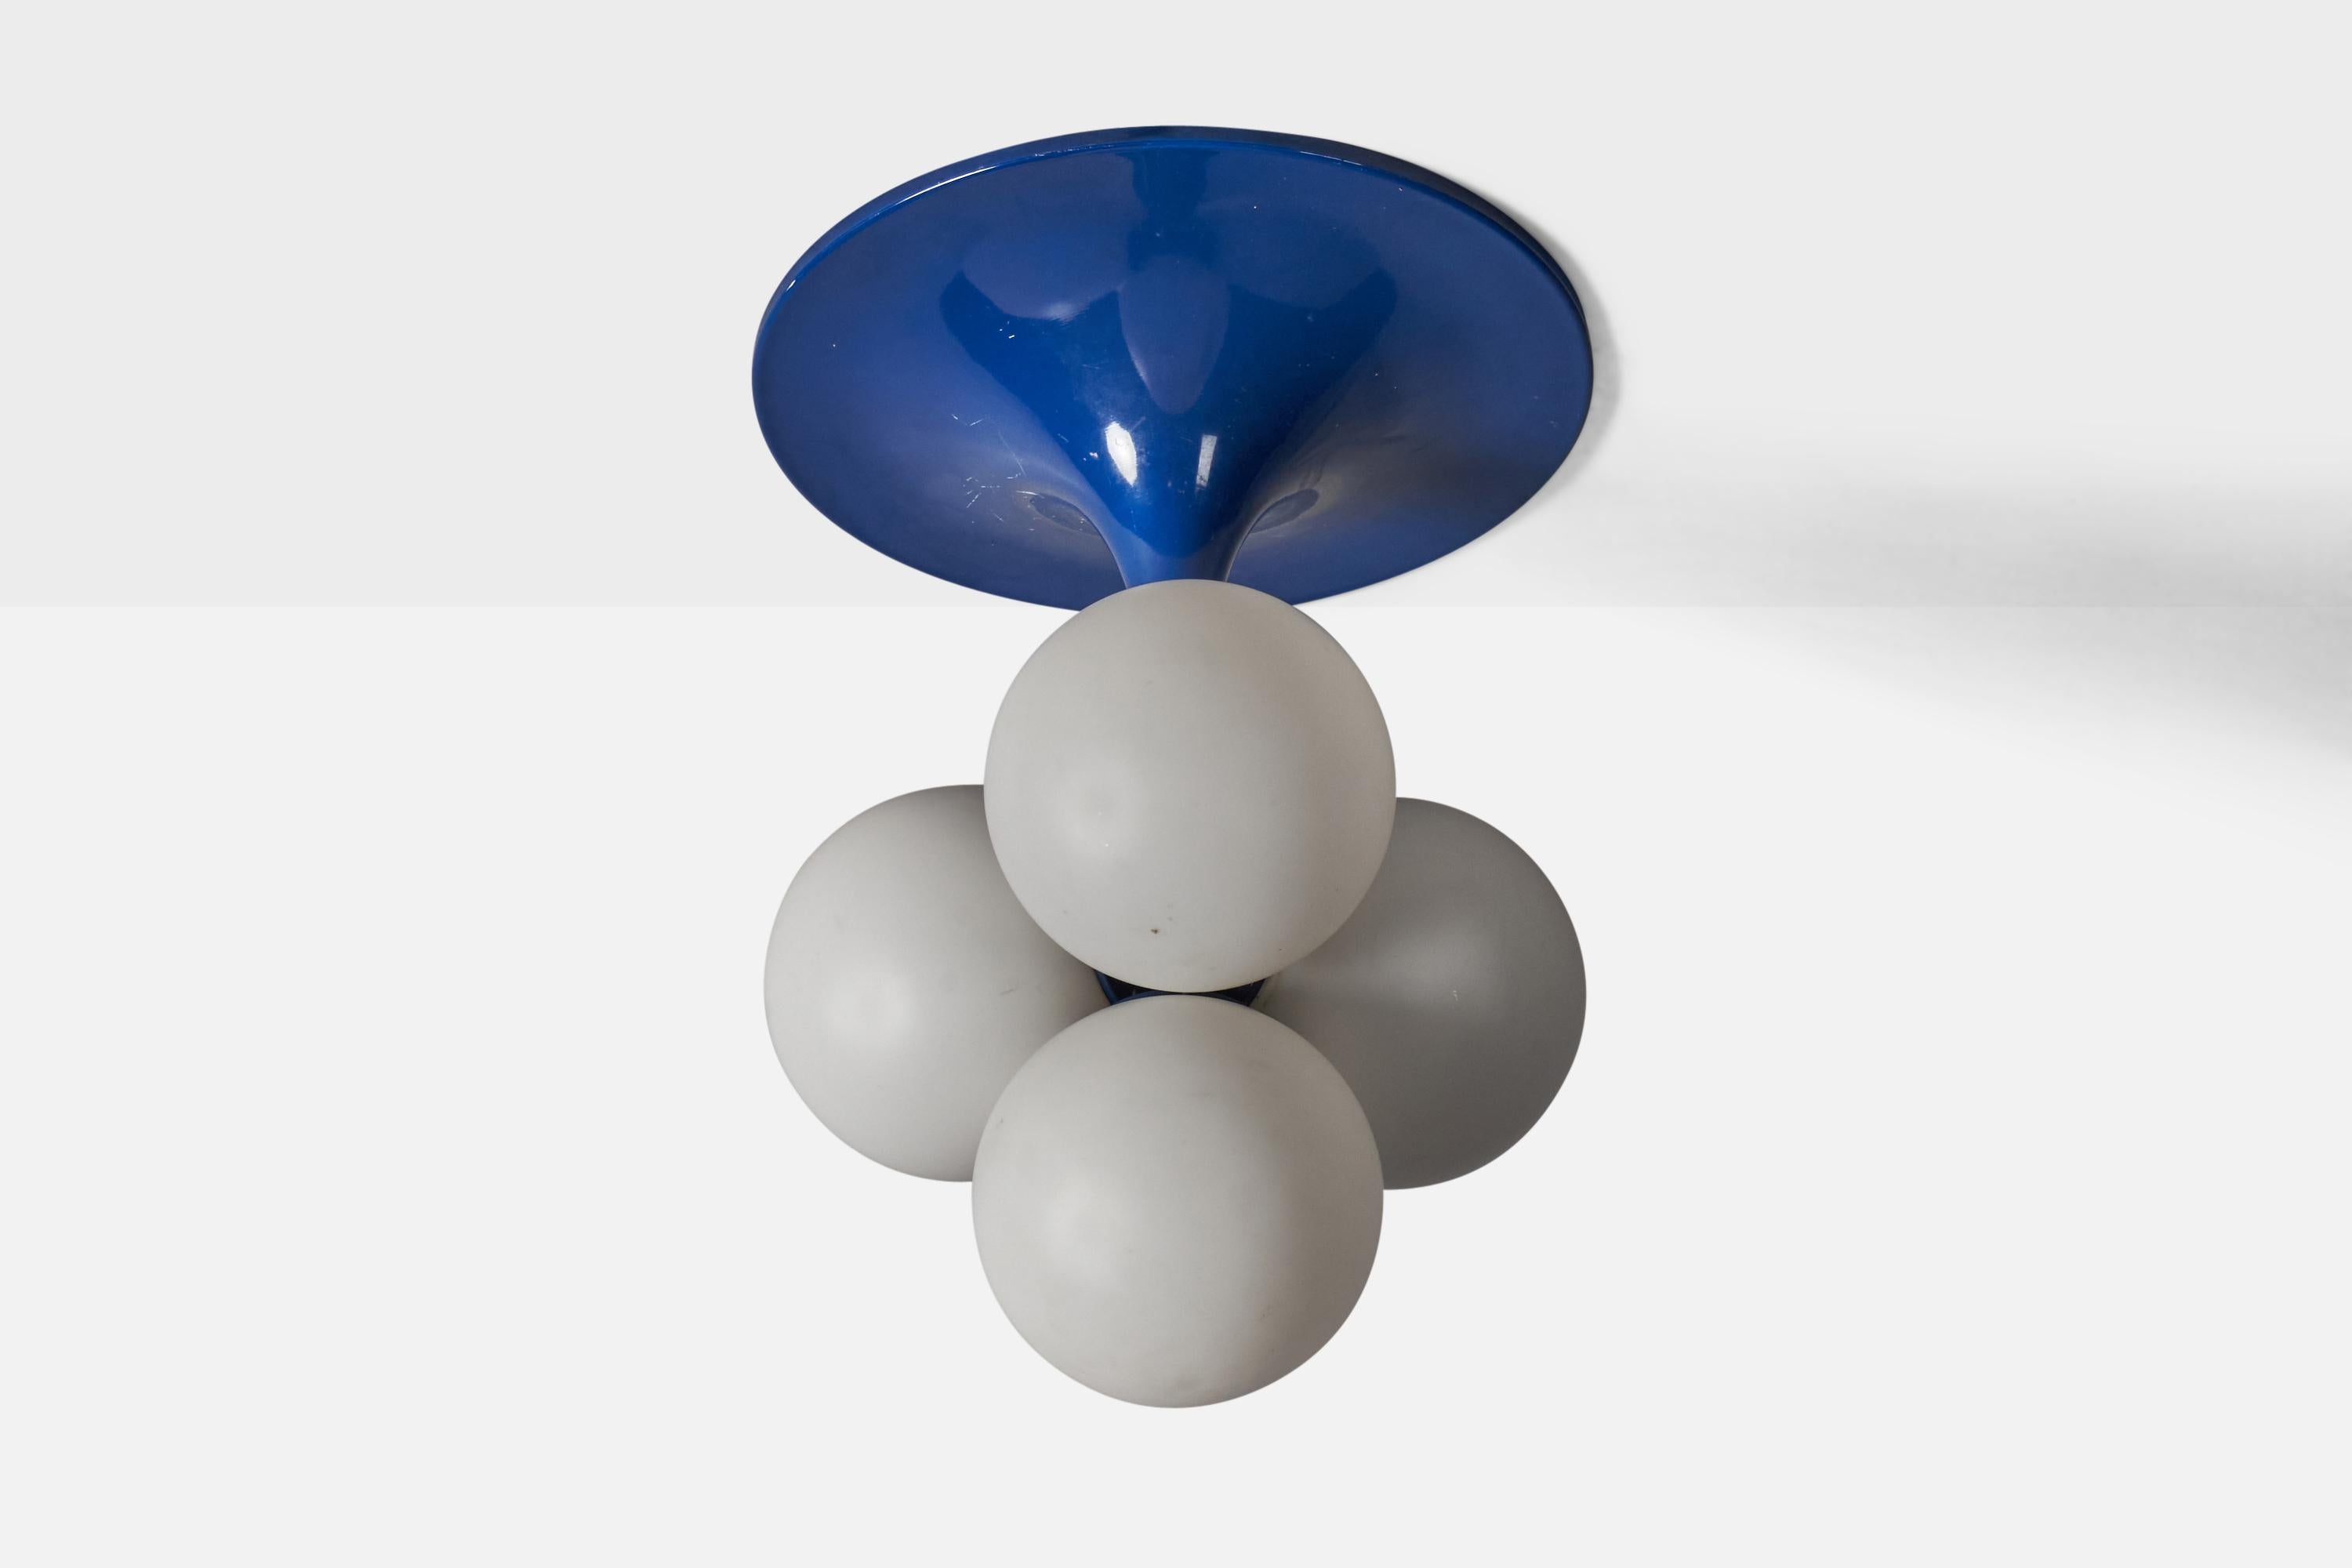 Kronleuchter aus blau lackiertem Metall und Milchglas, entworfen und hergestellt in Italien, ca. 1960er Jahre.

Gesamtabmessungen (Zoll): 21,25